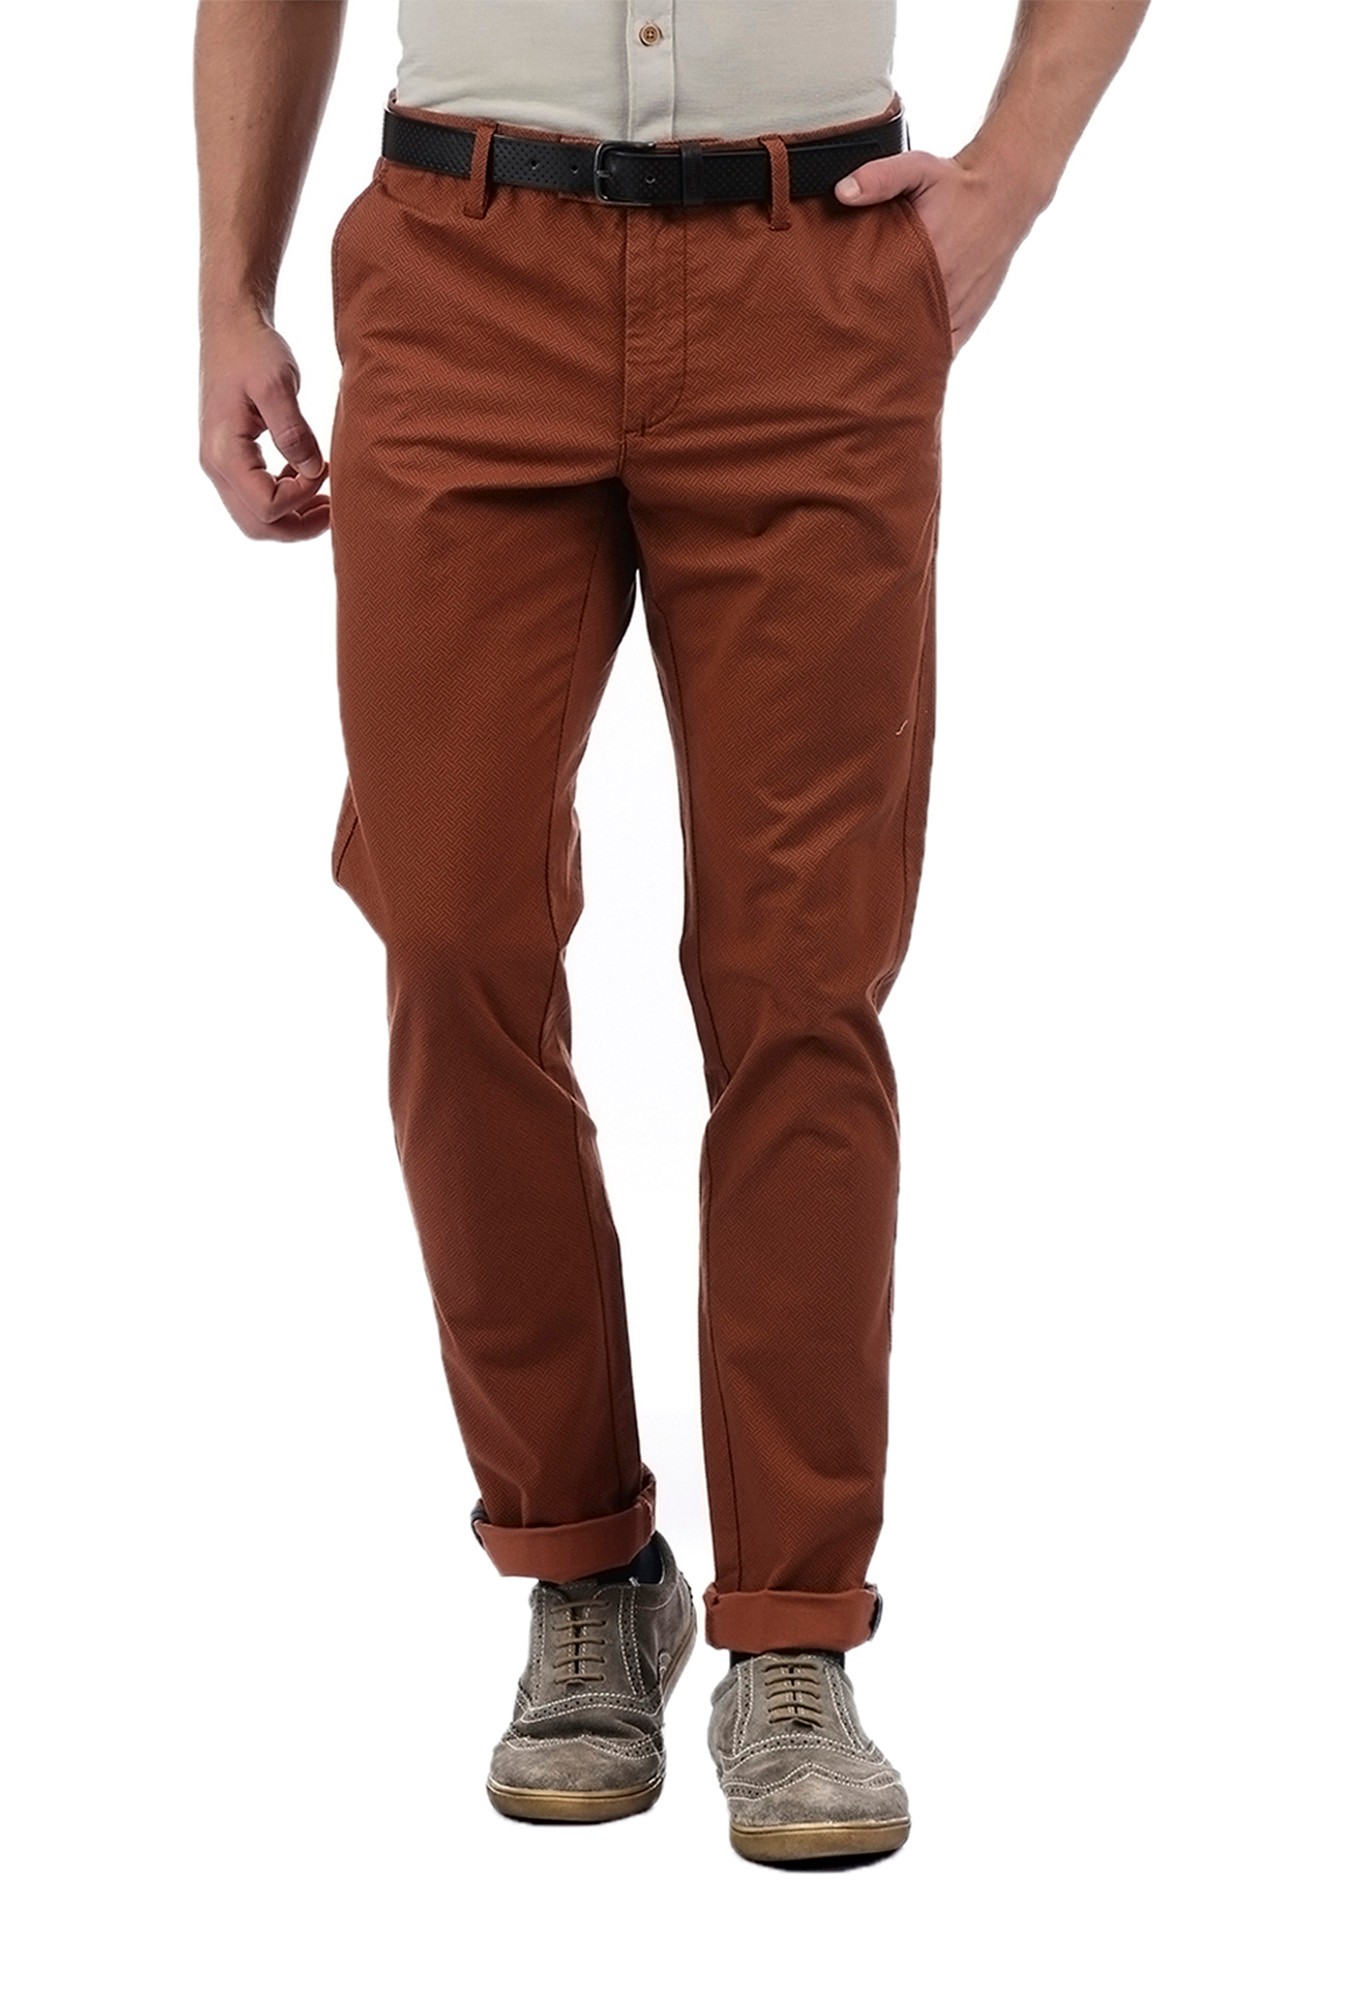 Details 91+ brick color pants